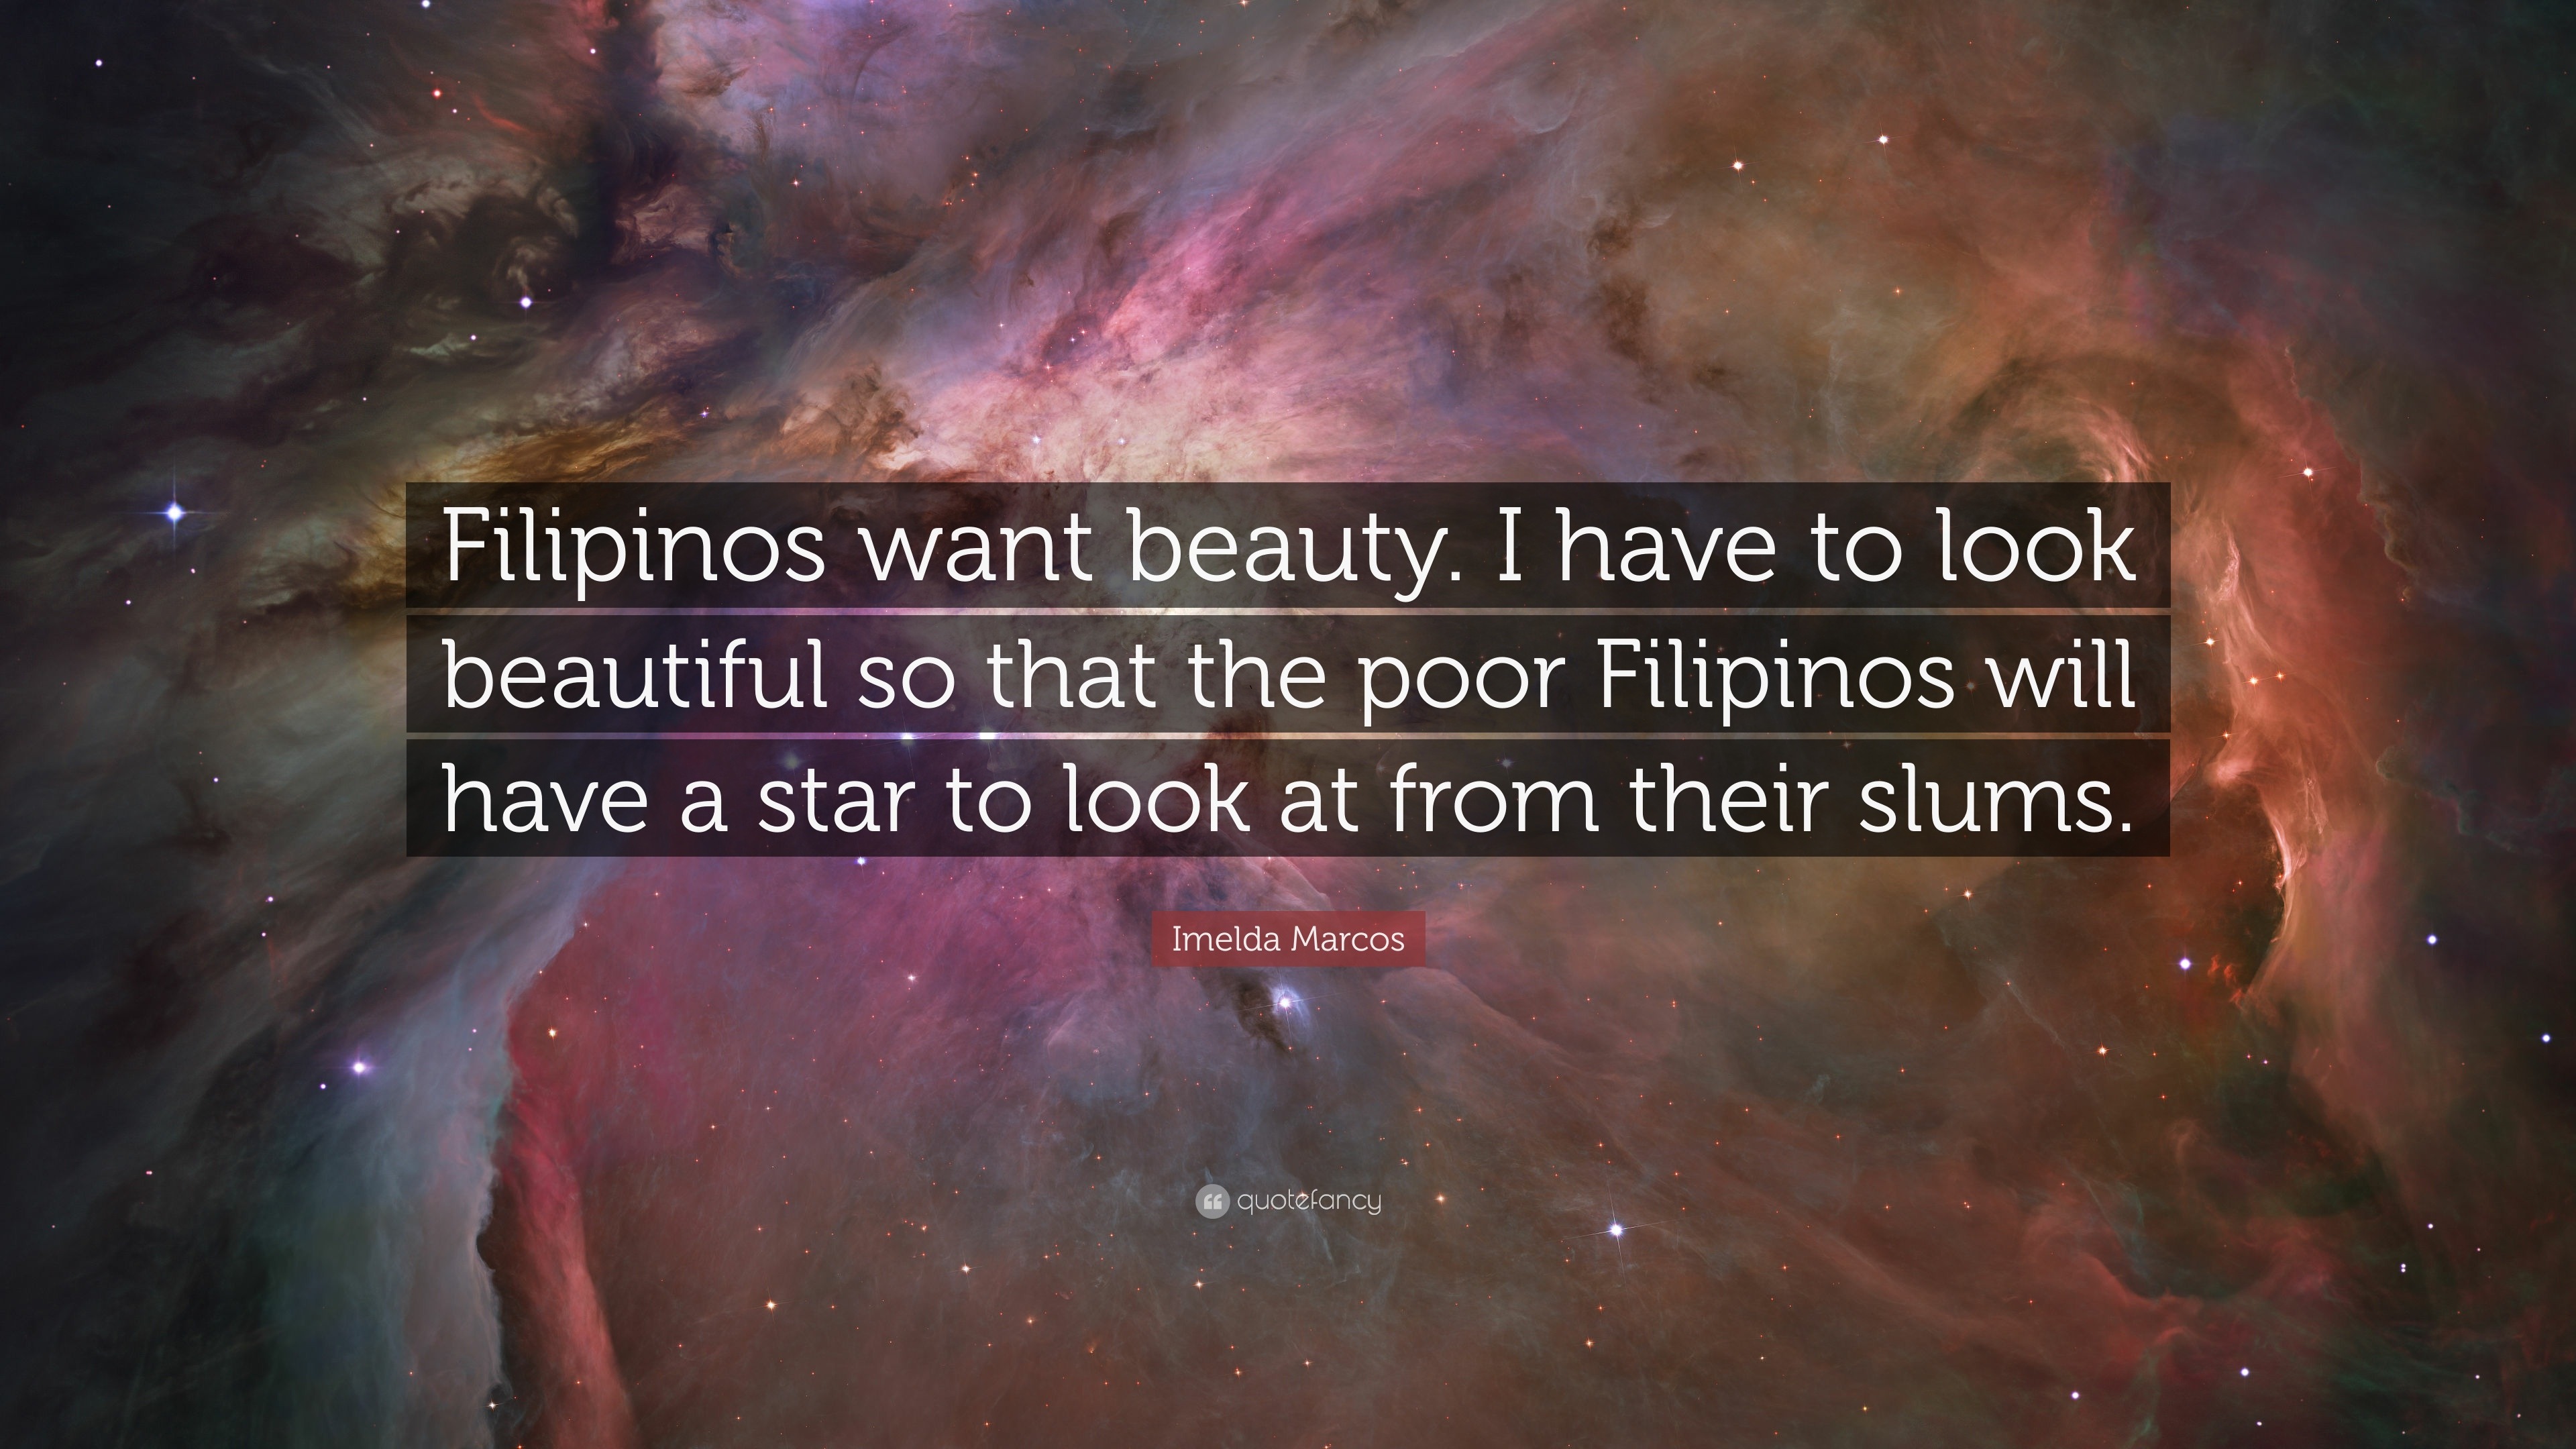 galaxy quotes wallpaper tagalog